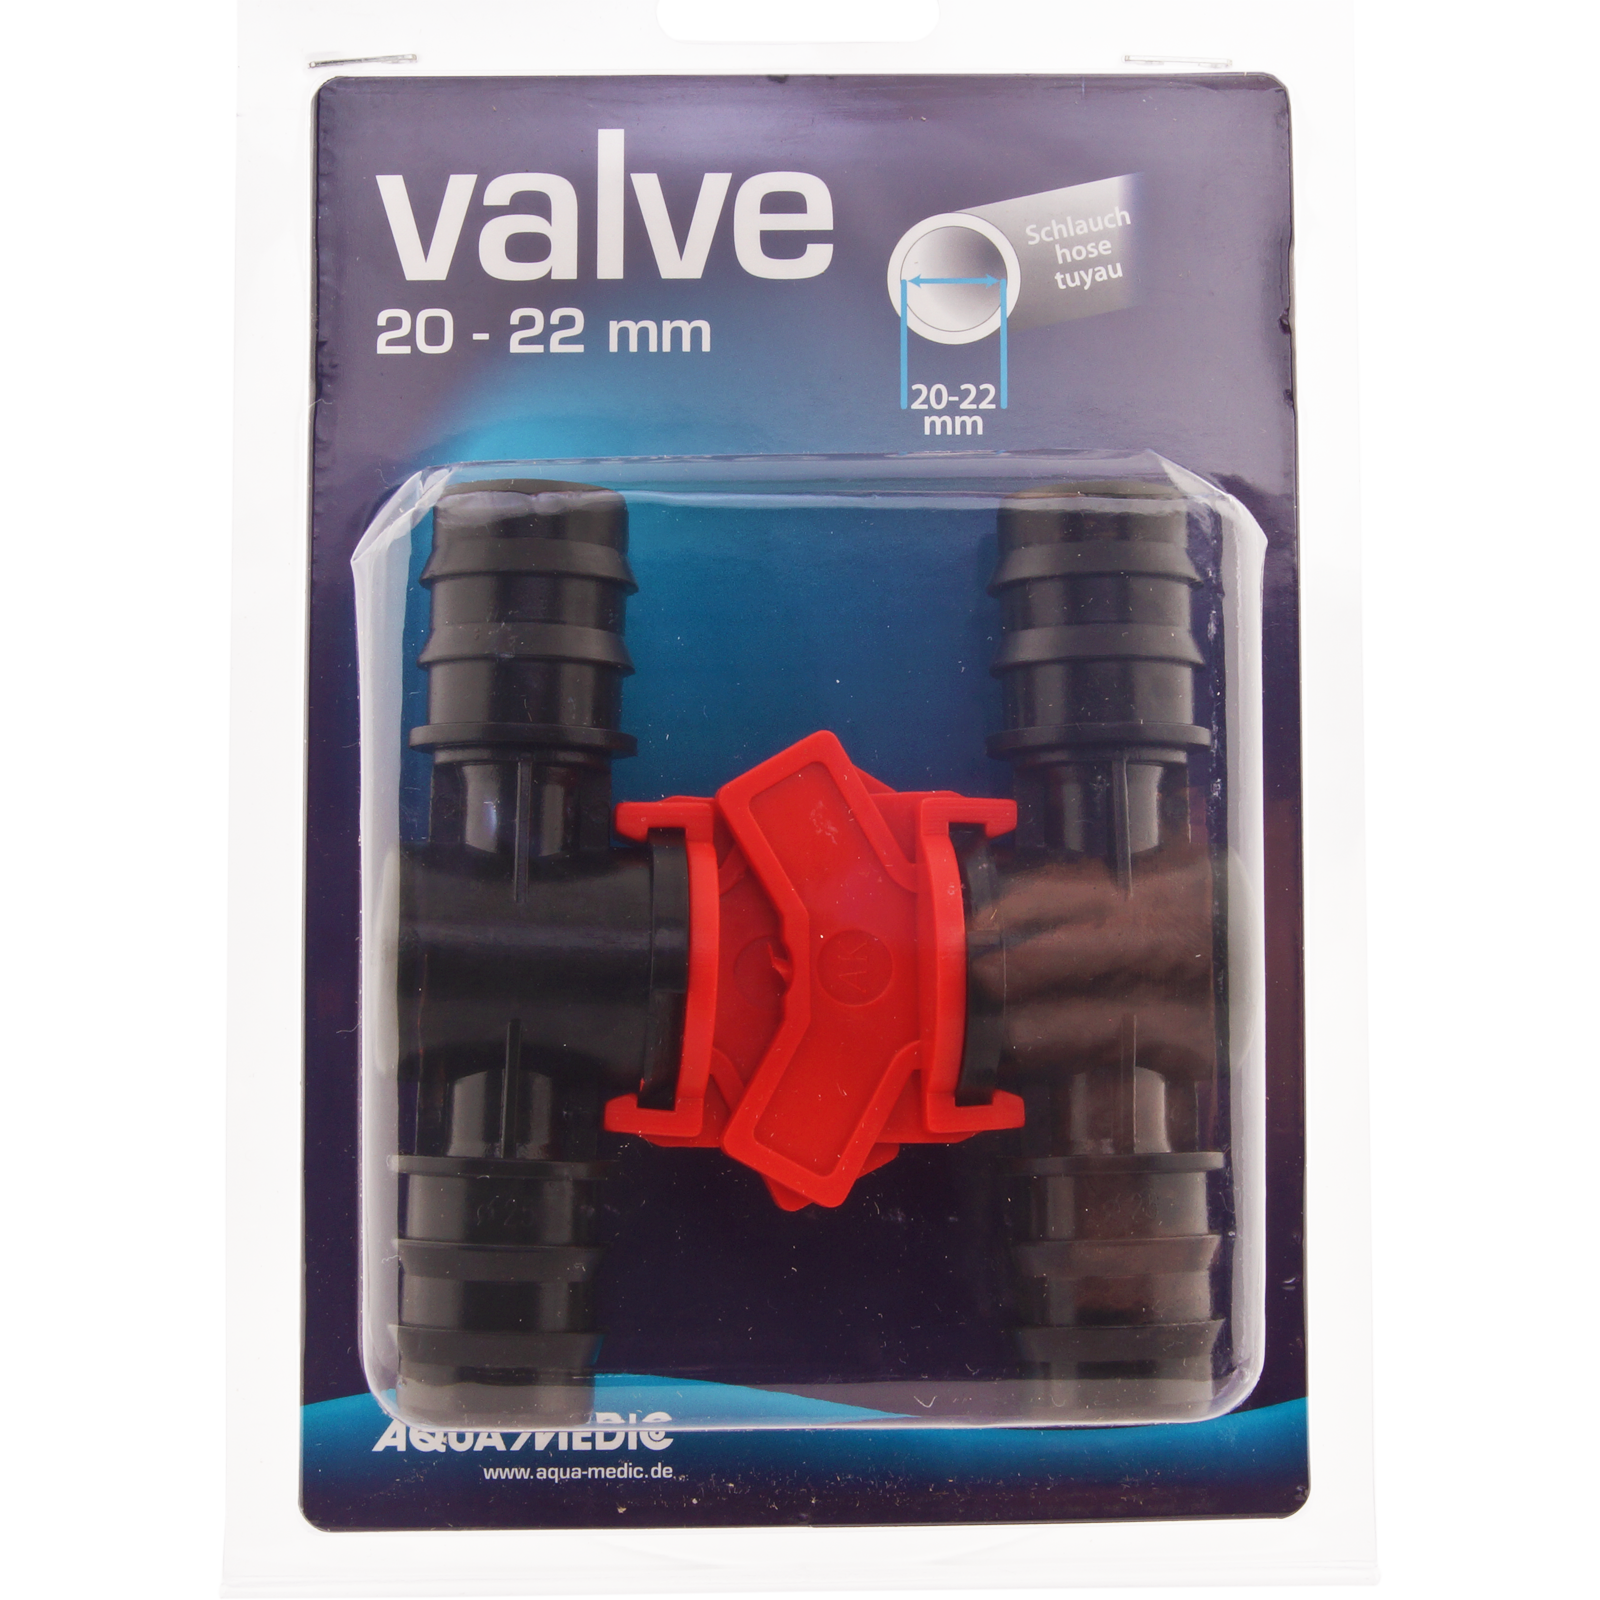 AQUA MEDIC Valve 20 - 22 mm lot de 2 robinets un quart de tour pour tuyau souple 19/27 mm